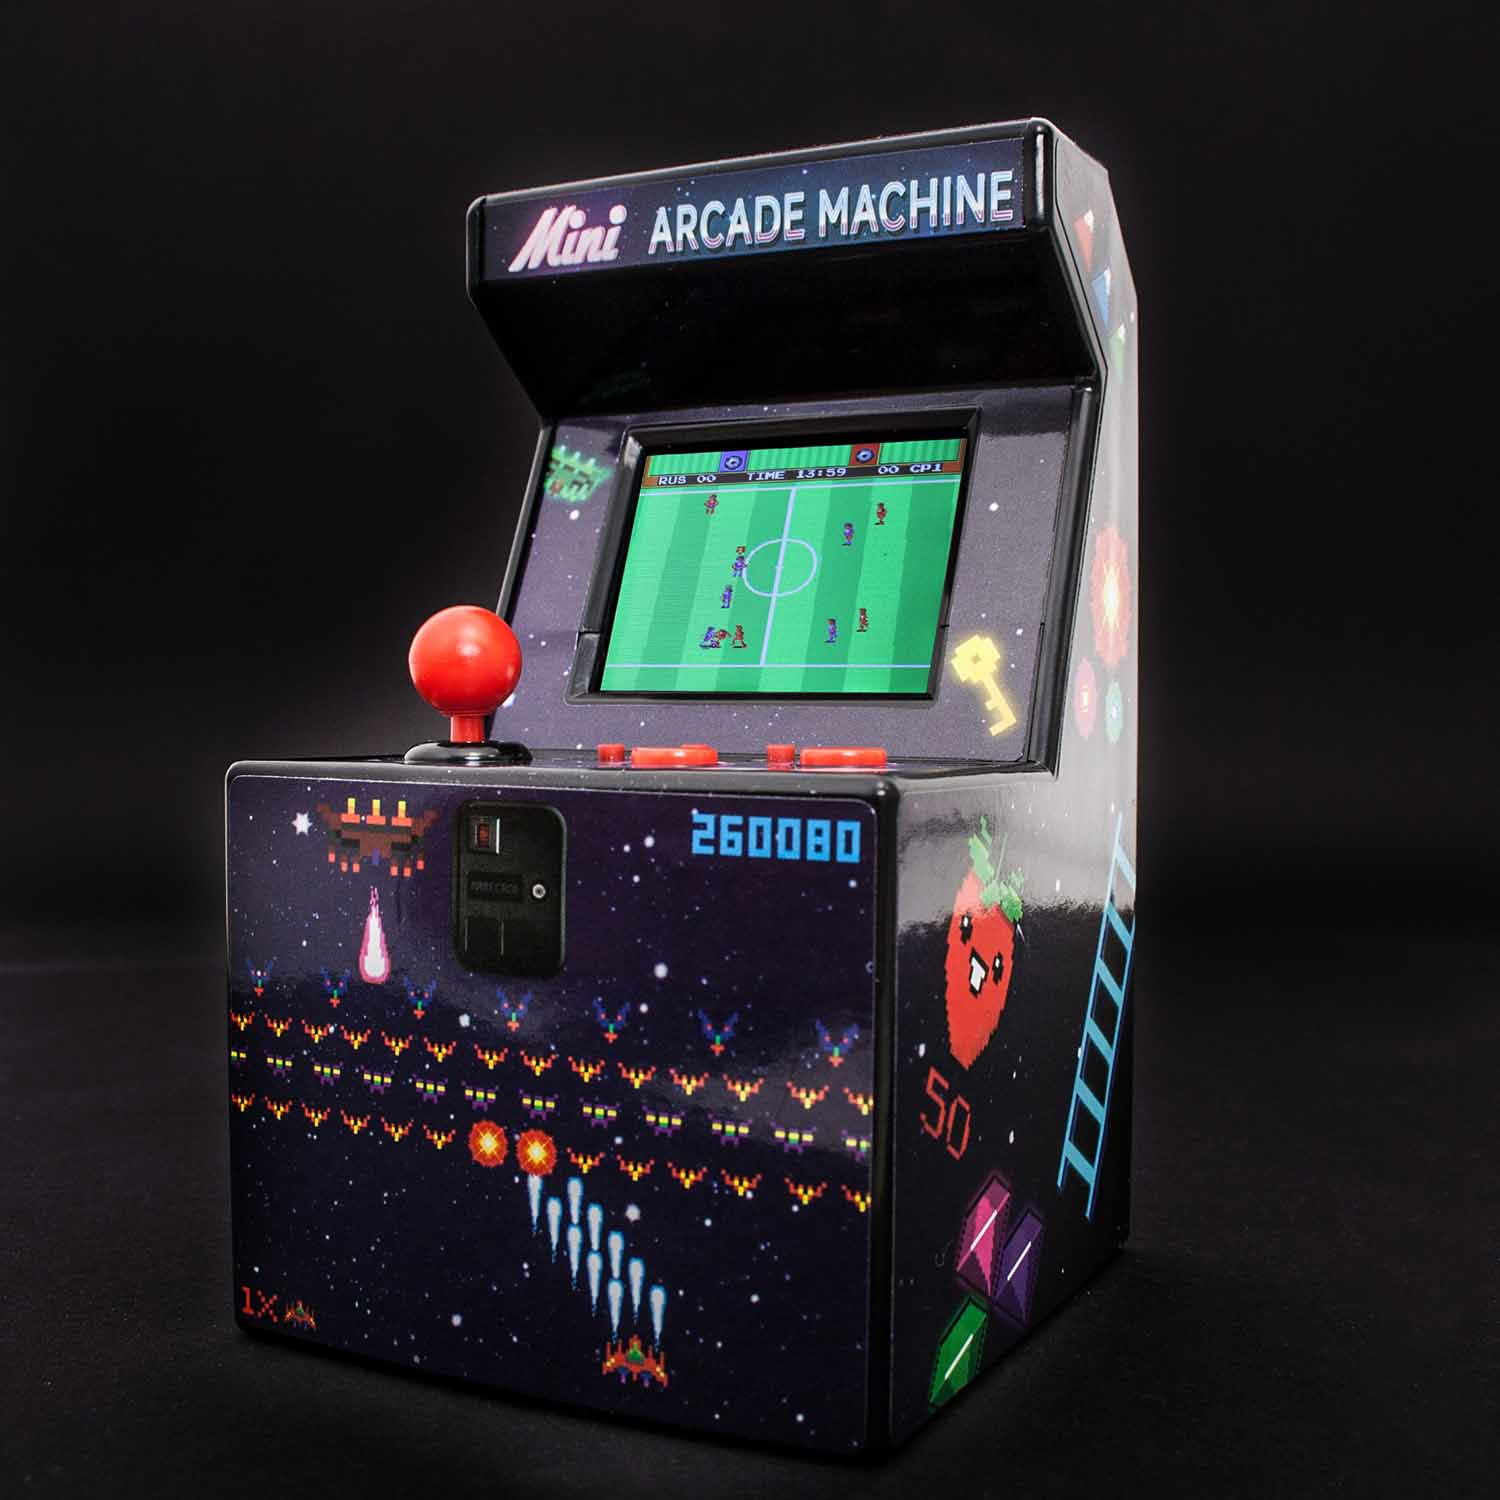 Thumbs Up ORB Mini Arcade Machine - Aufrecht stehender Arkadenschrank - Junge/Mädchen - 6 Jahr(e) - 6,35 cm (2.5 Zoll) - TFT - Mehrfarben